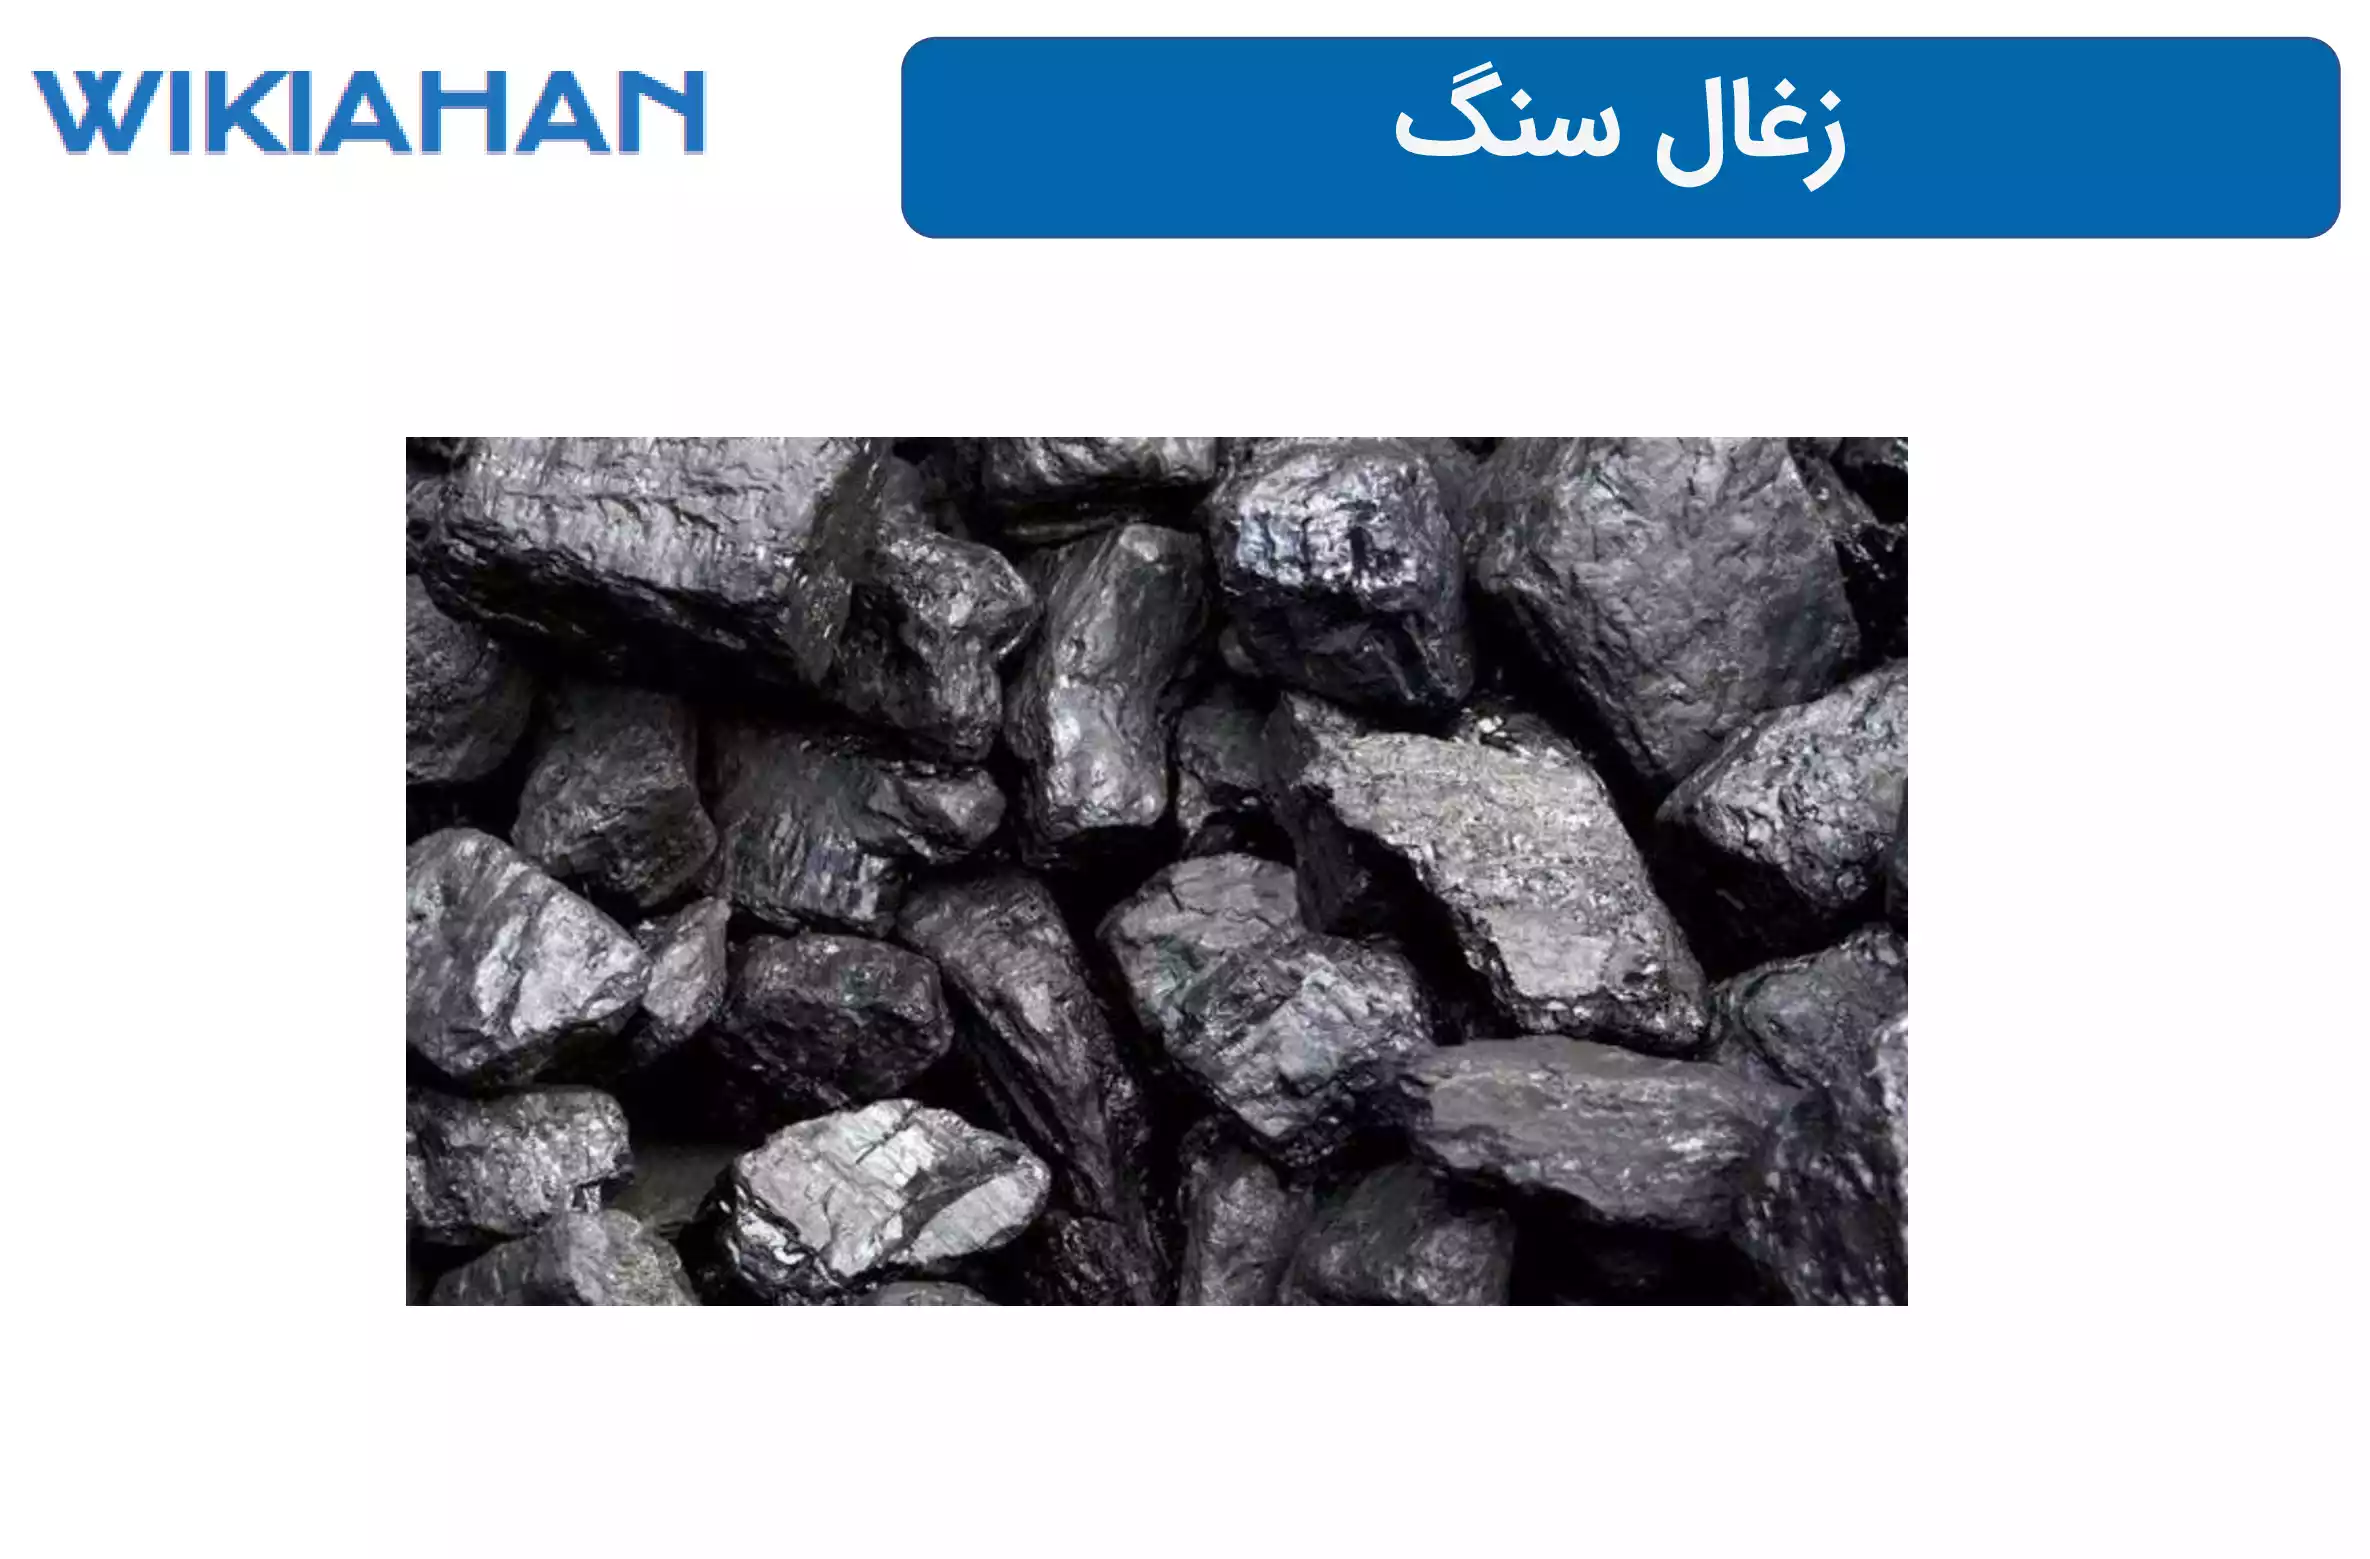 زغال سنگ - ویکی آهن